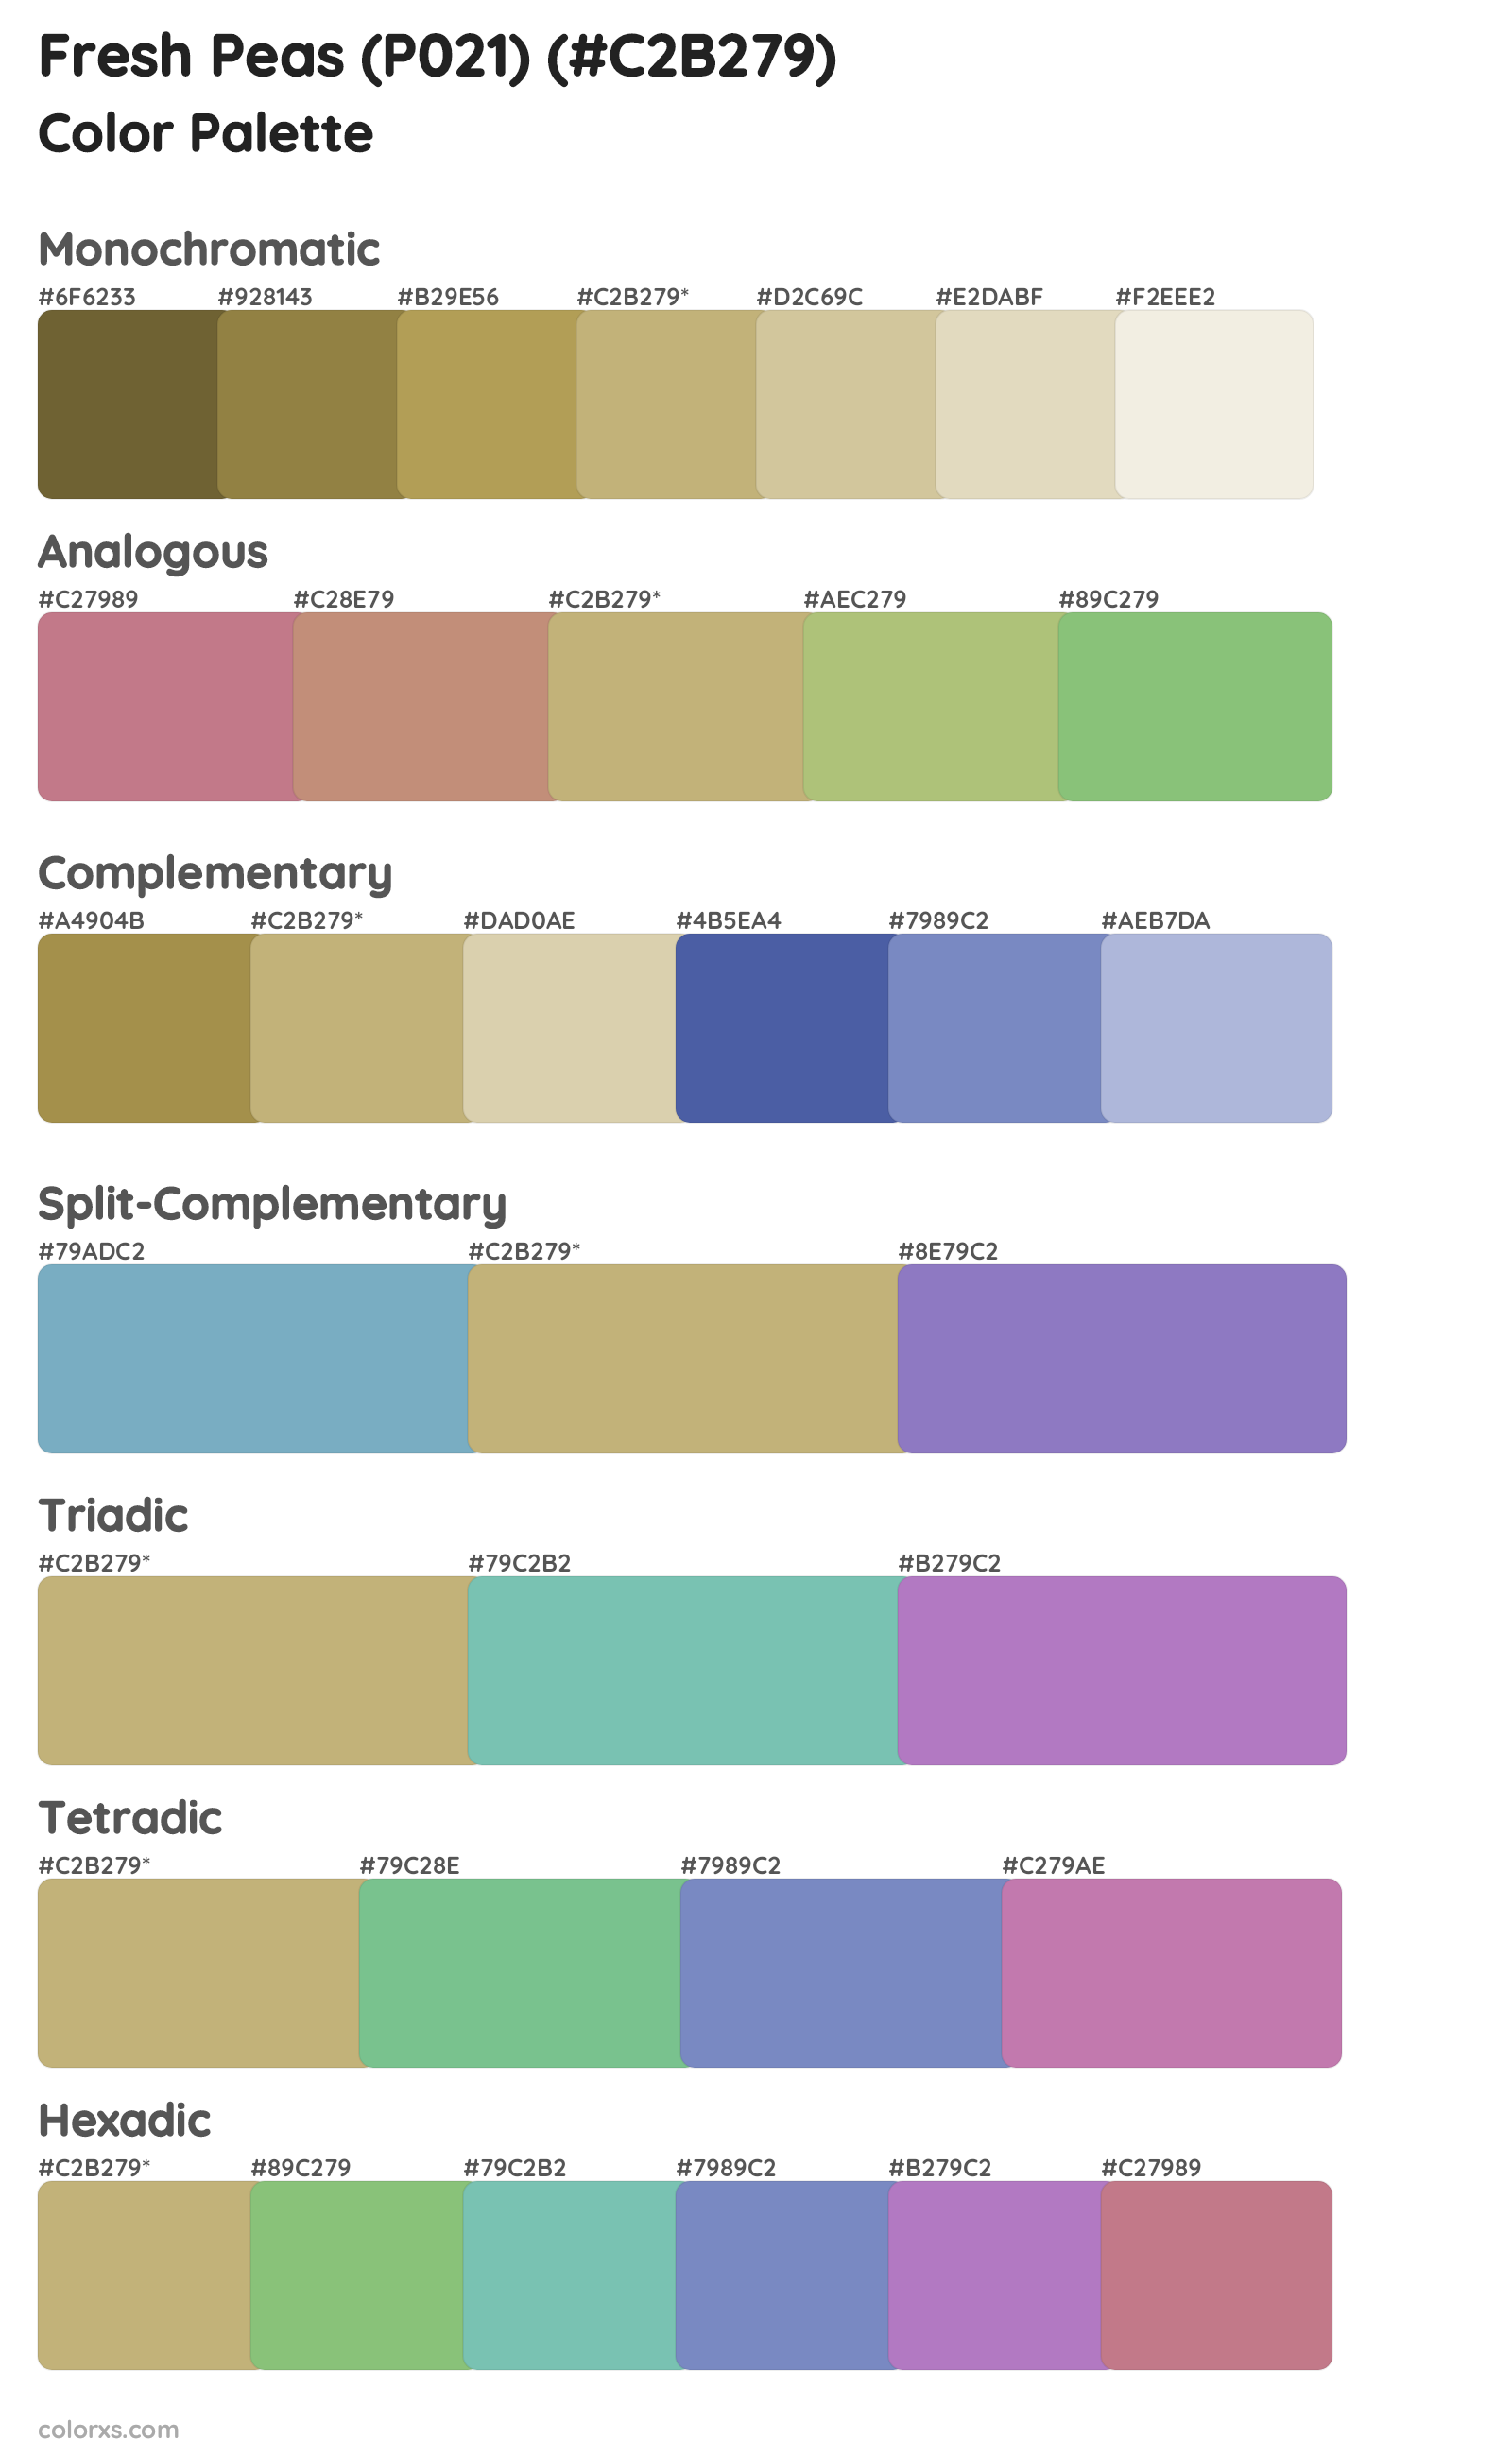 Fresh Peas (P021) Color Scheme Palettes